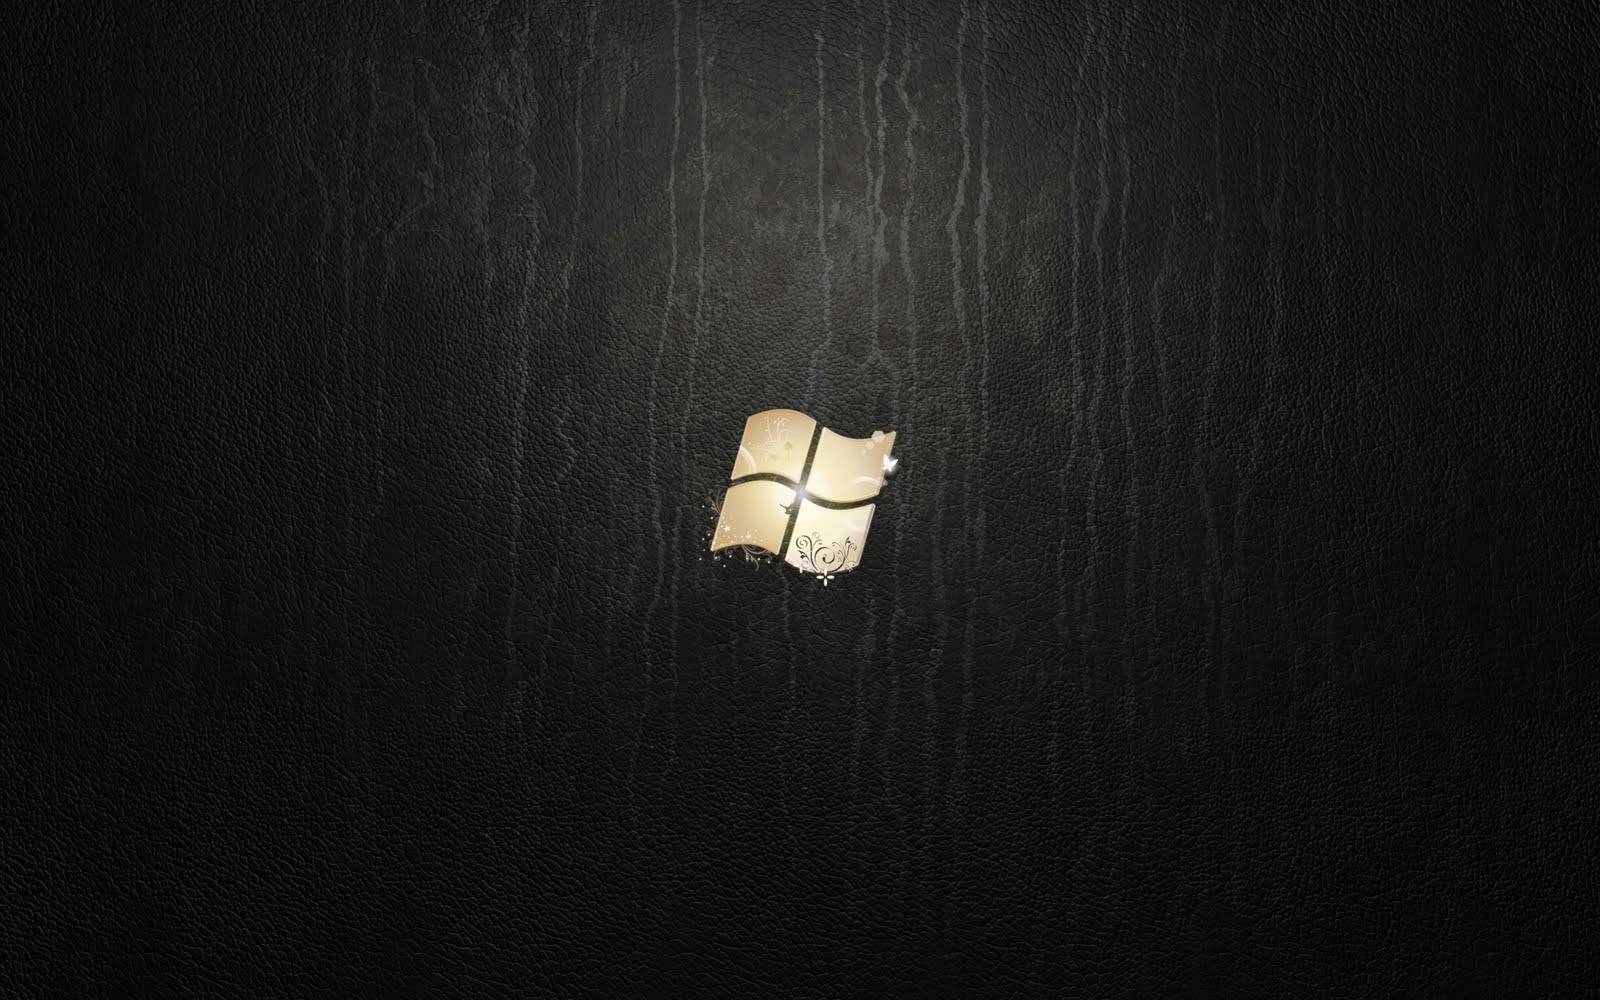 Windows Logo On Black Wood in Logos